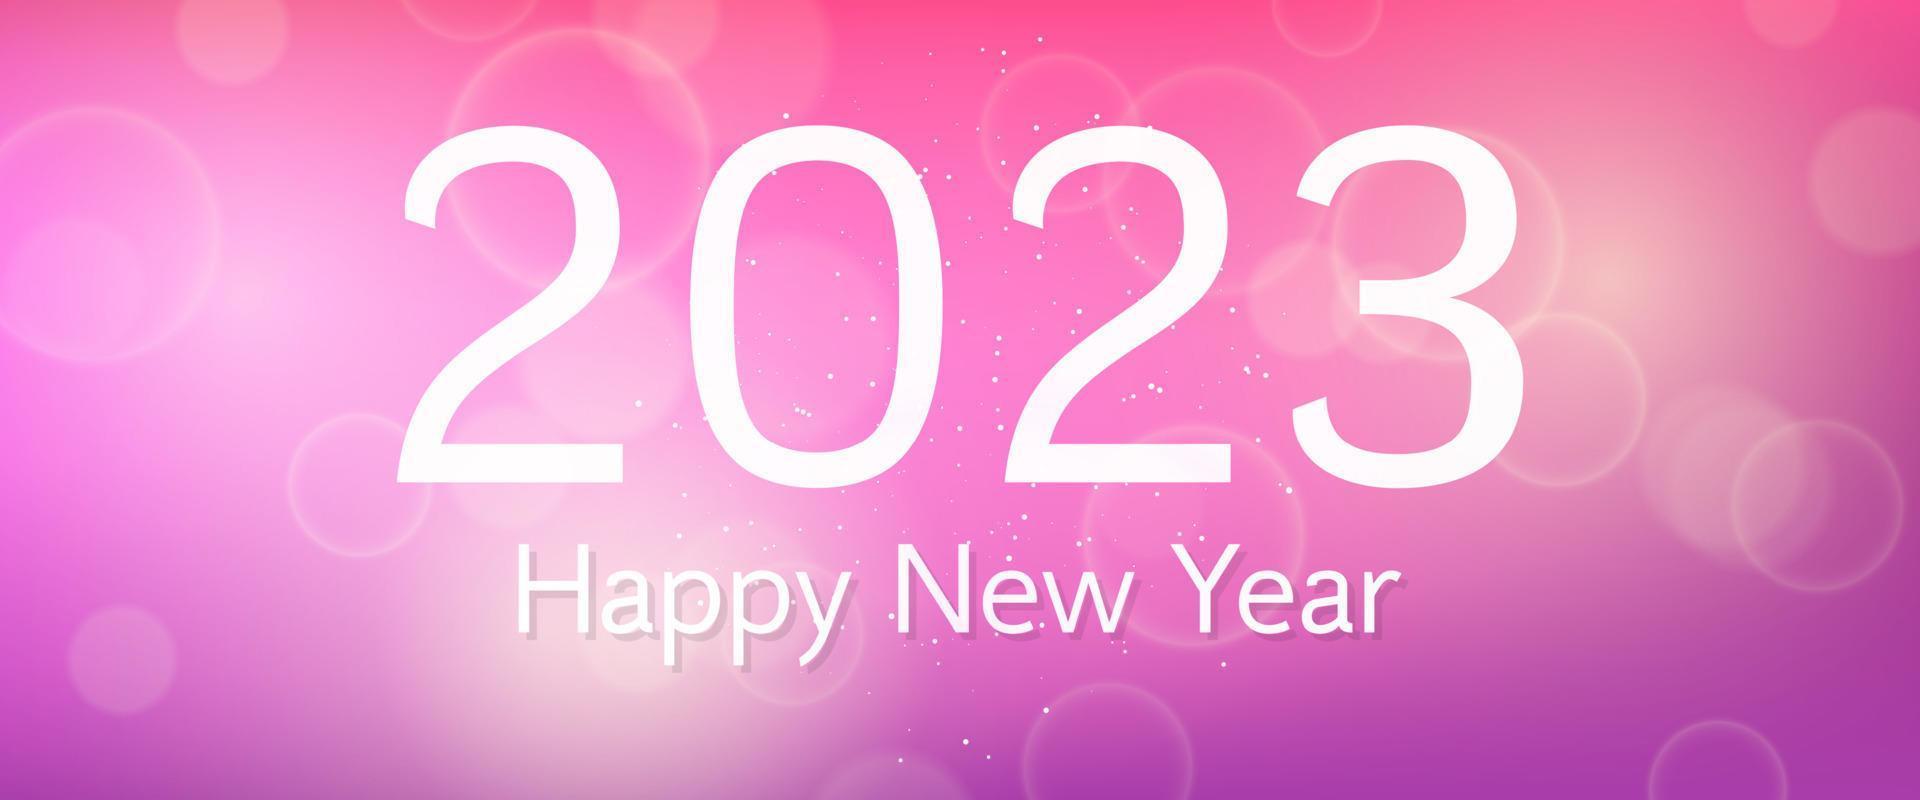 inscripción de feliz año nuevo 2023 sobre fondo borroso. números blancos sobre fondo con confeti, bokeh y destello de lente. ilustración vectorial vector